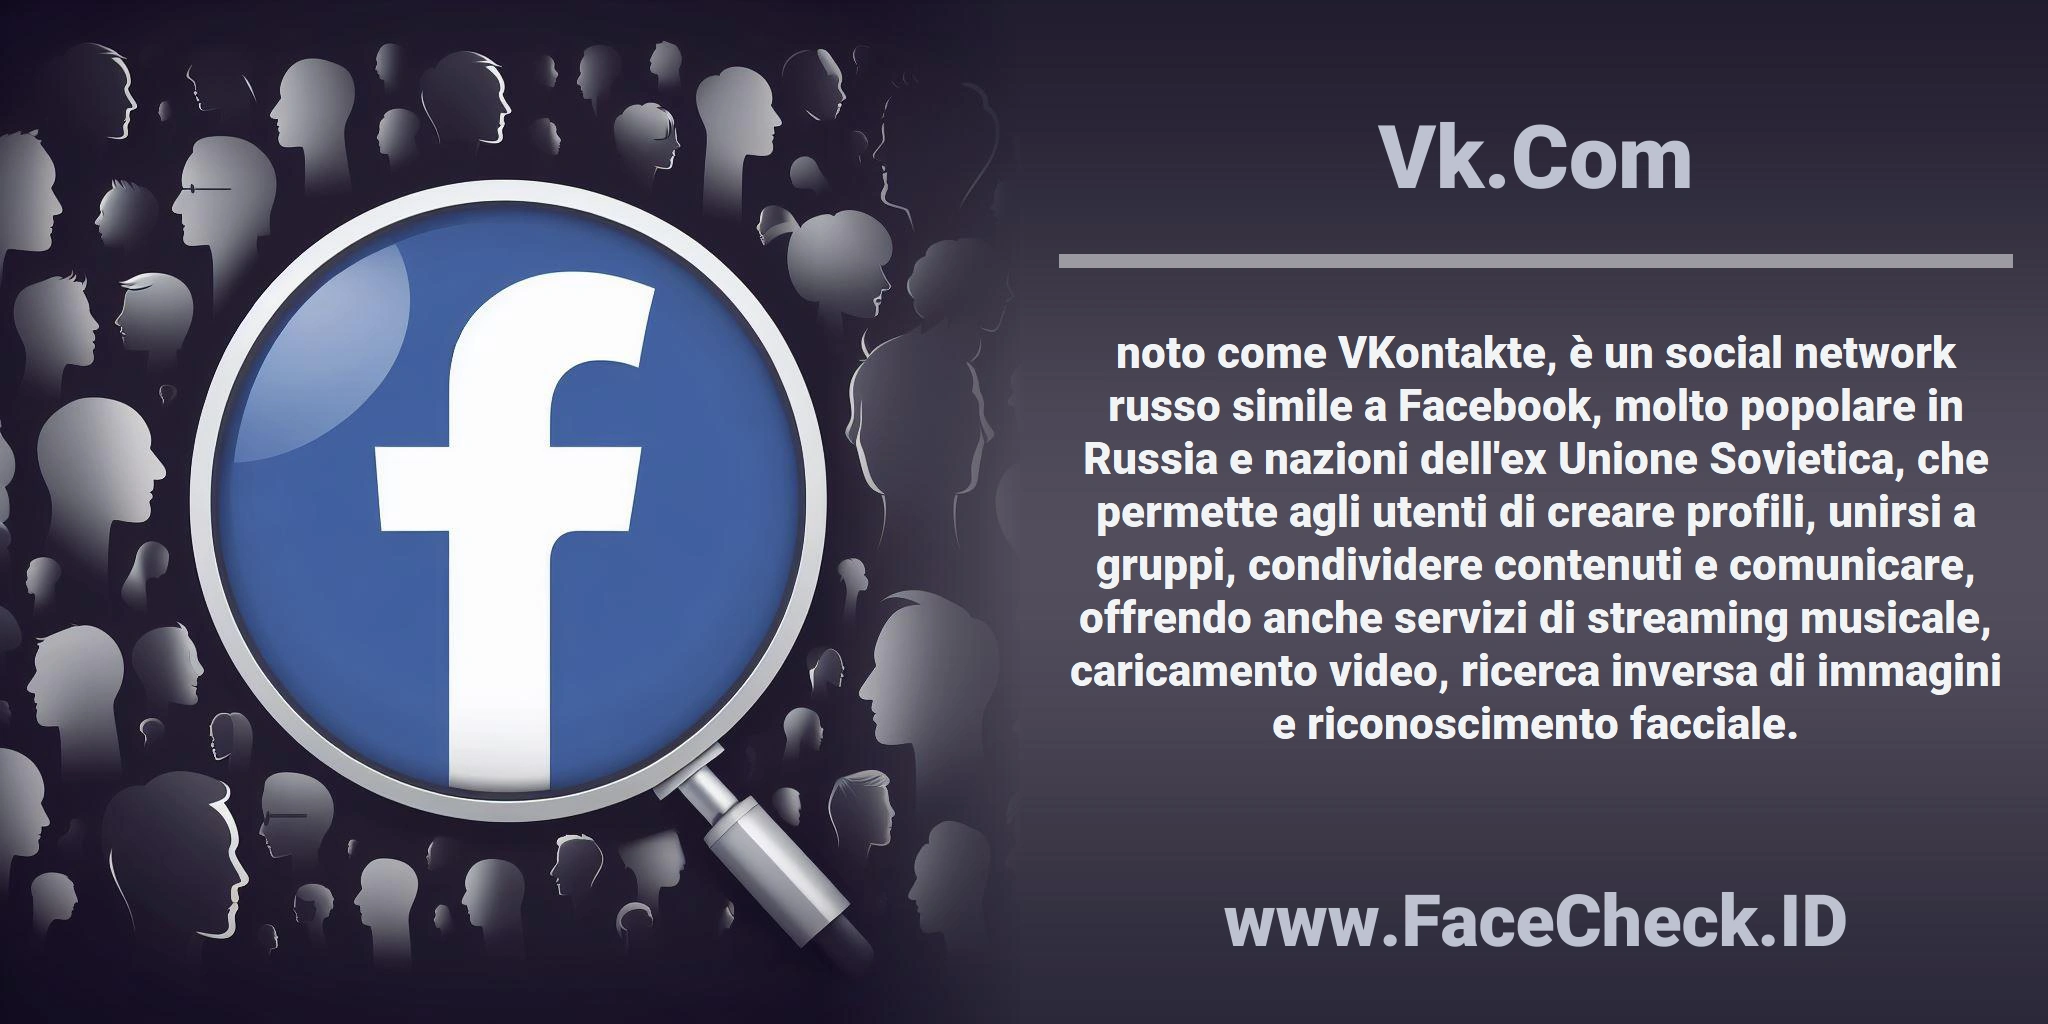 <b>Vk.Com</b> noto come VKontakte, è un social network russo simile a Facebook, molto popolare in Russia e nazioni dell'ex Unione Sovietica, che permette agli utenti di creare profili, unirsi a gruppi, condividere contenuti e comunicare, offrendo anche servizi di streaming musicale, caricamento video, ricerca inversa di immagini e riconoscimento facciale.